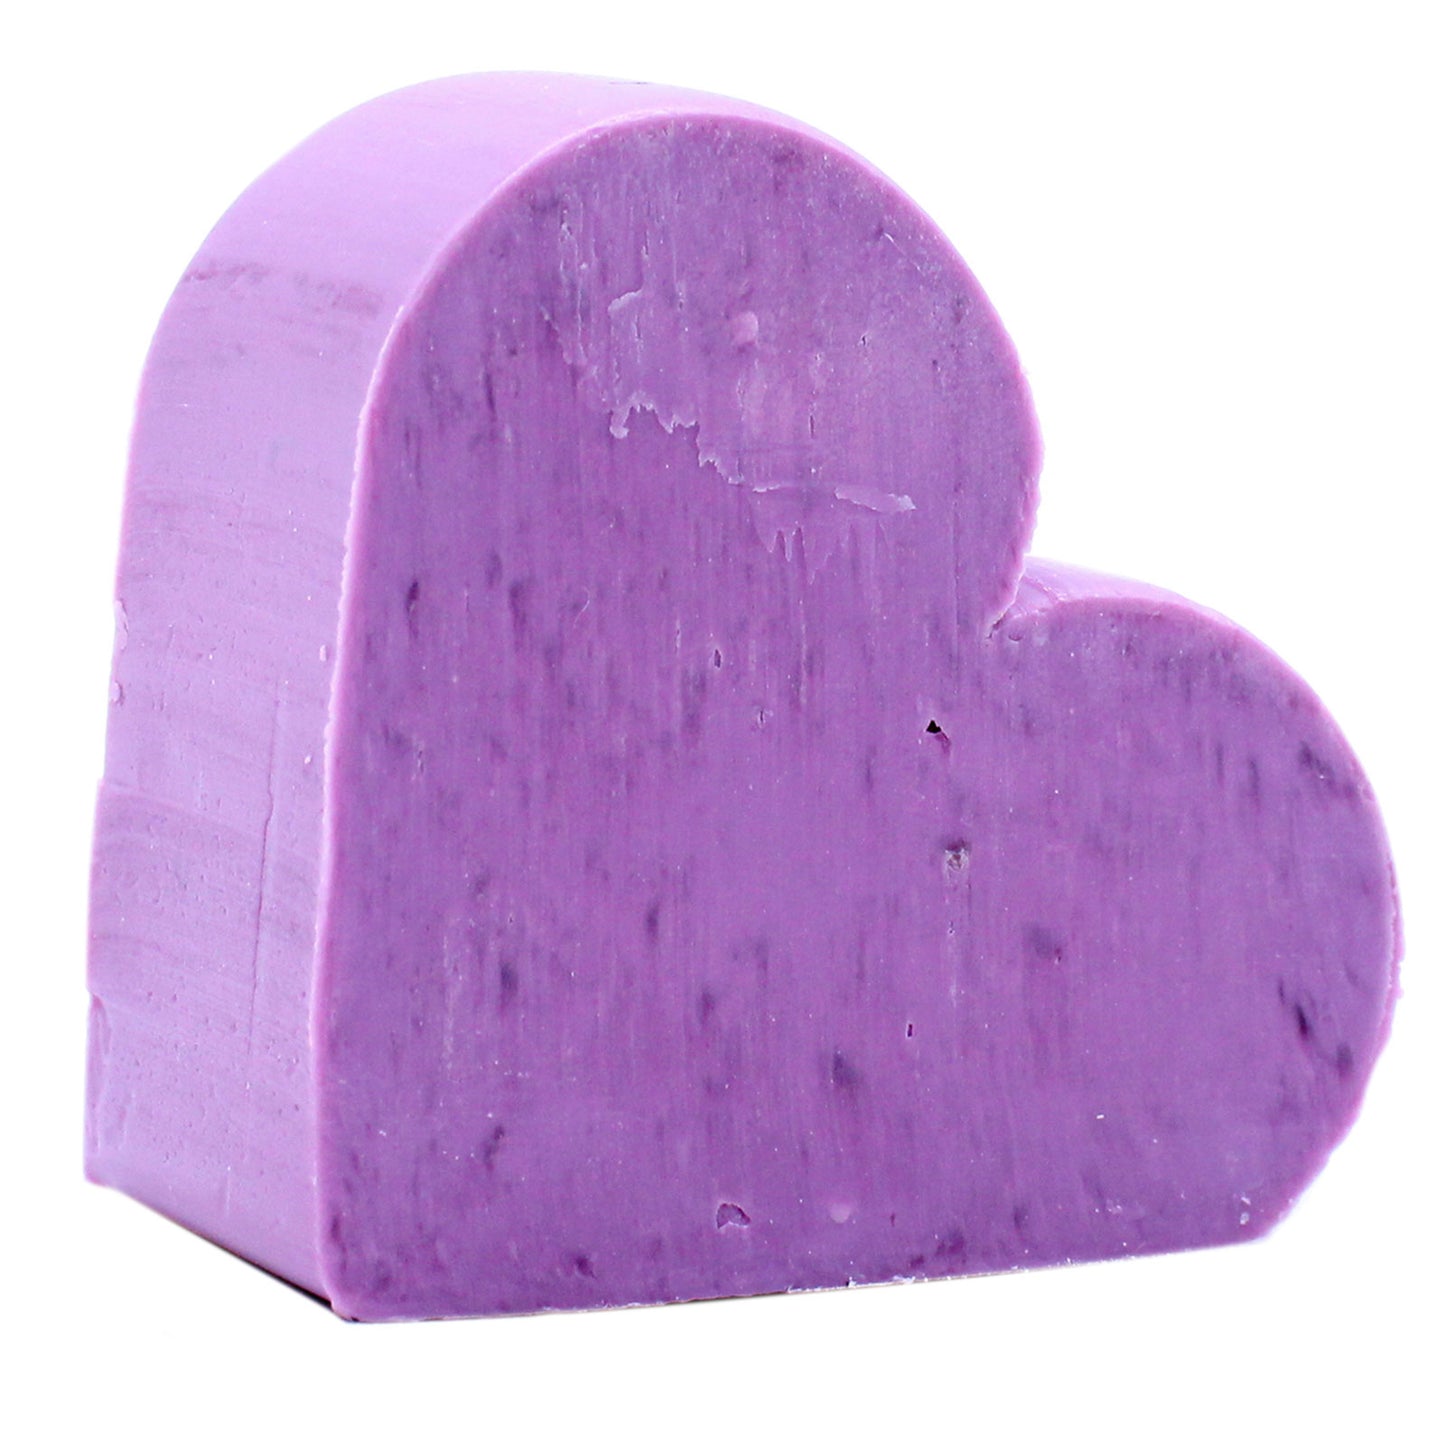 Dinky Lavendel Herzseife | Ganz natürlich